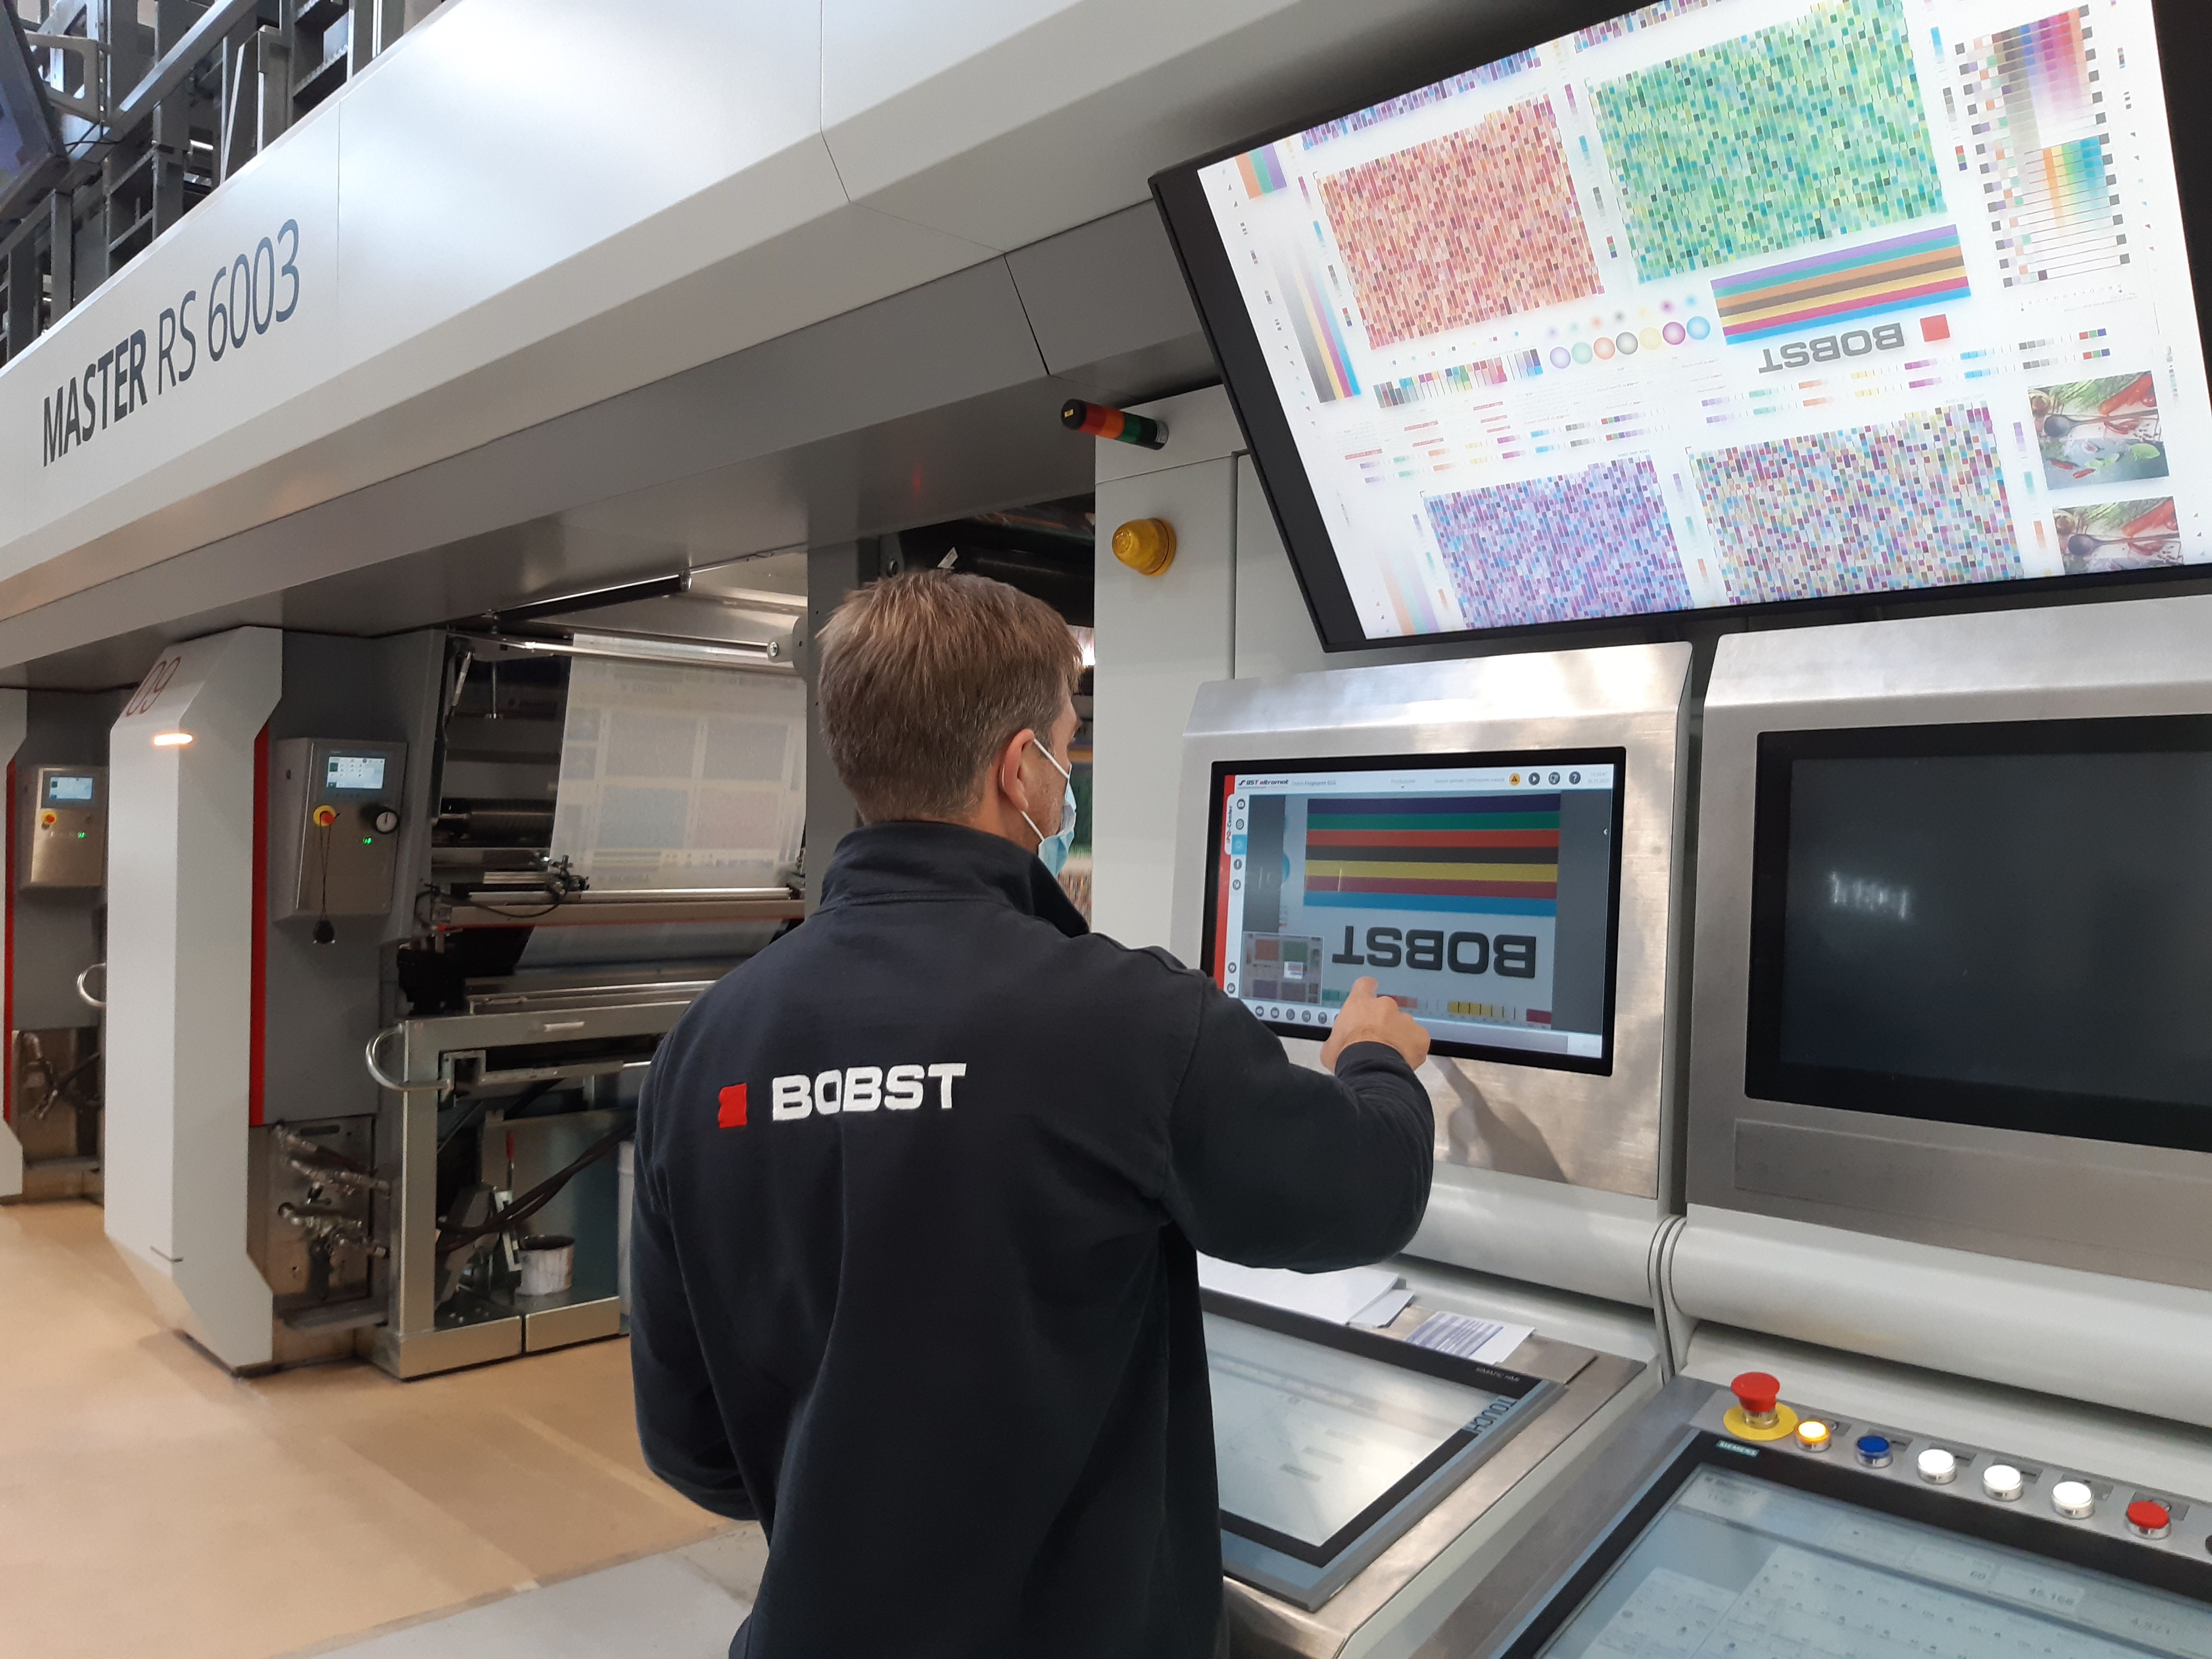 Fingerprinting for oneECG job run on a RS 6003 gravure printing press in Bobst Italia’s Packaging Center